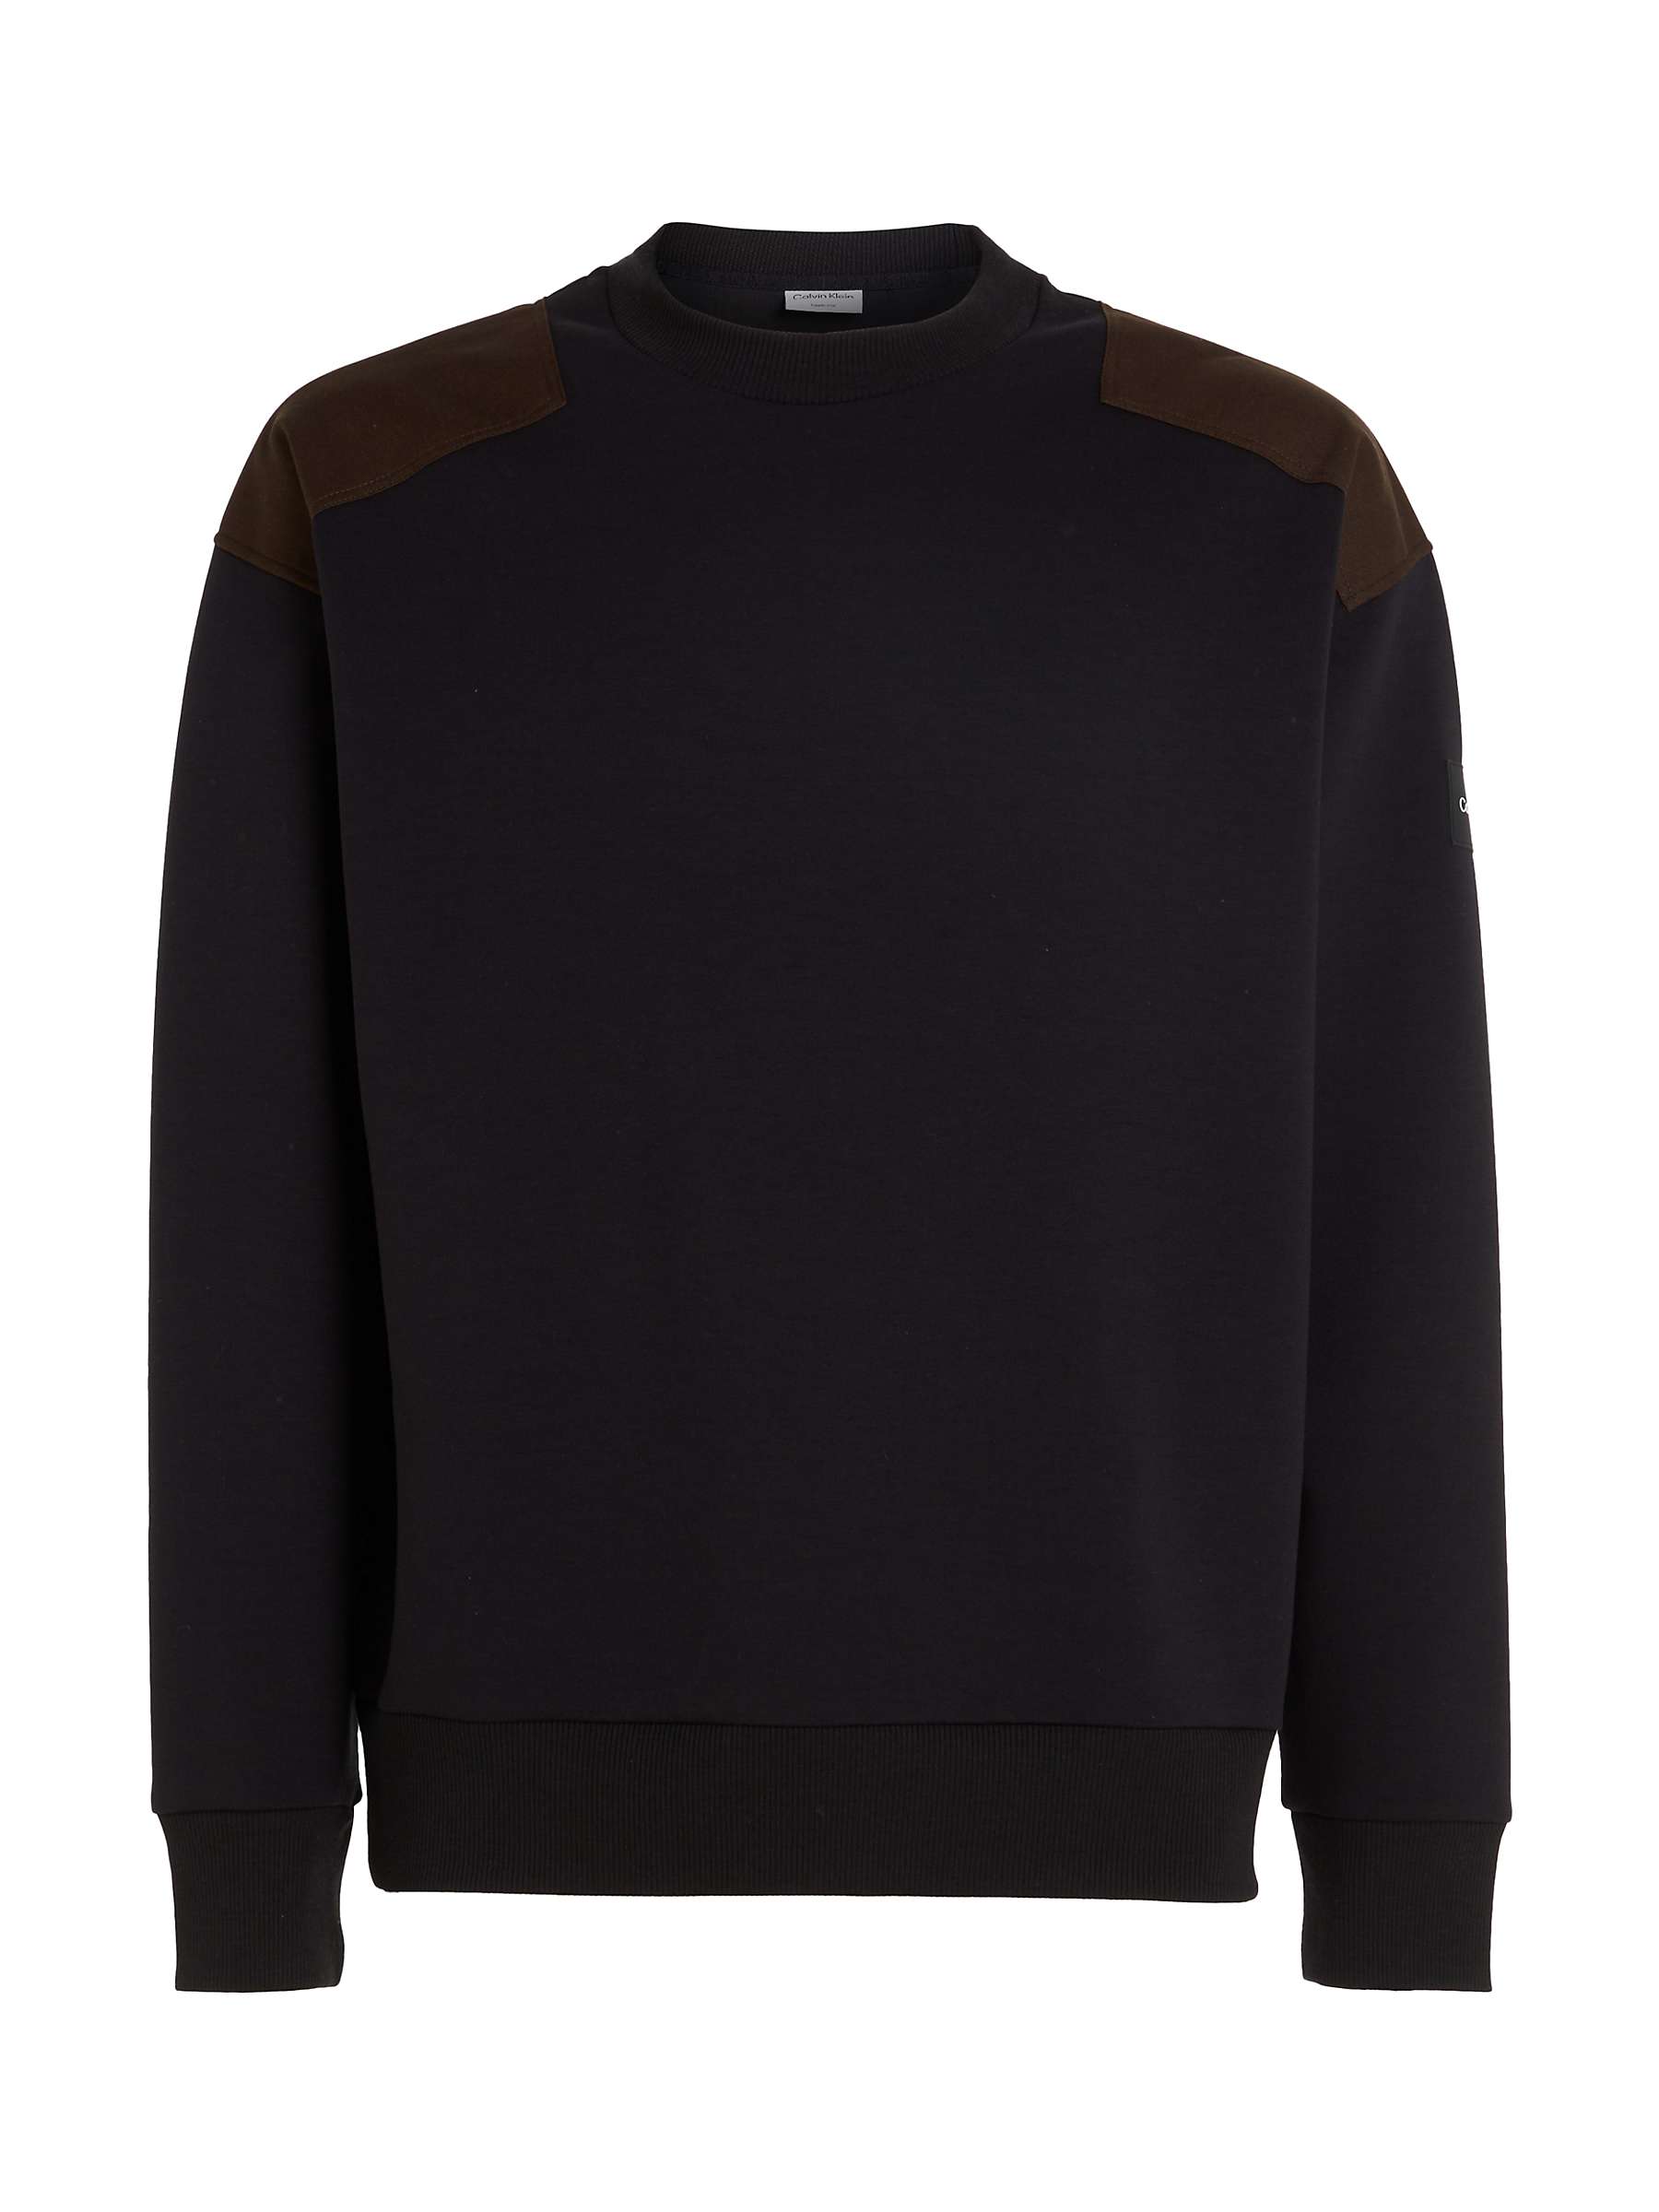 Calvin Klein Logo Sweatshirt, CK Black at John Lewis & Partners